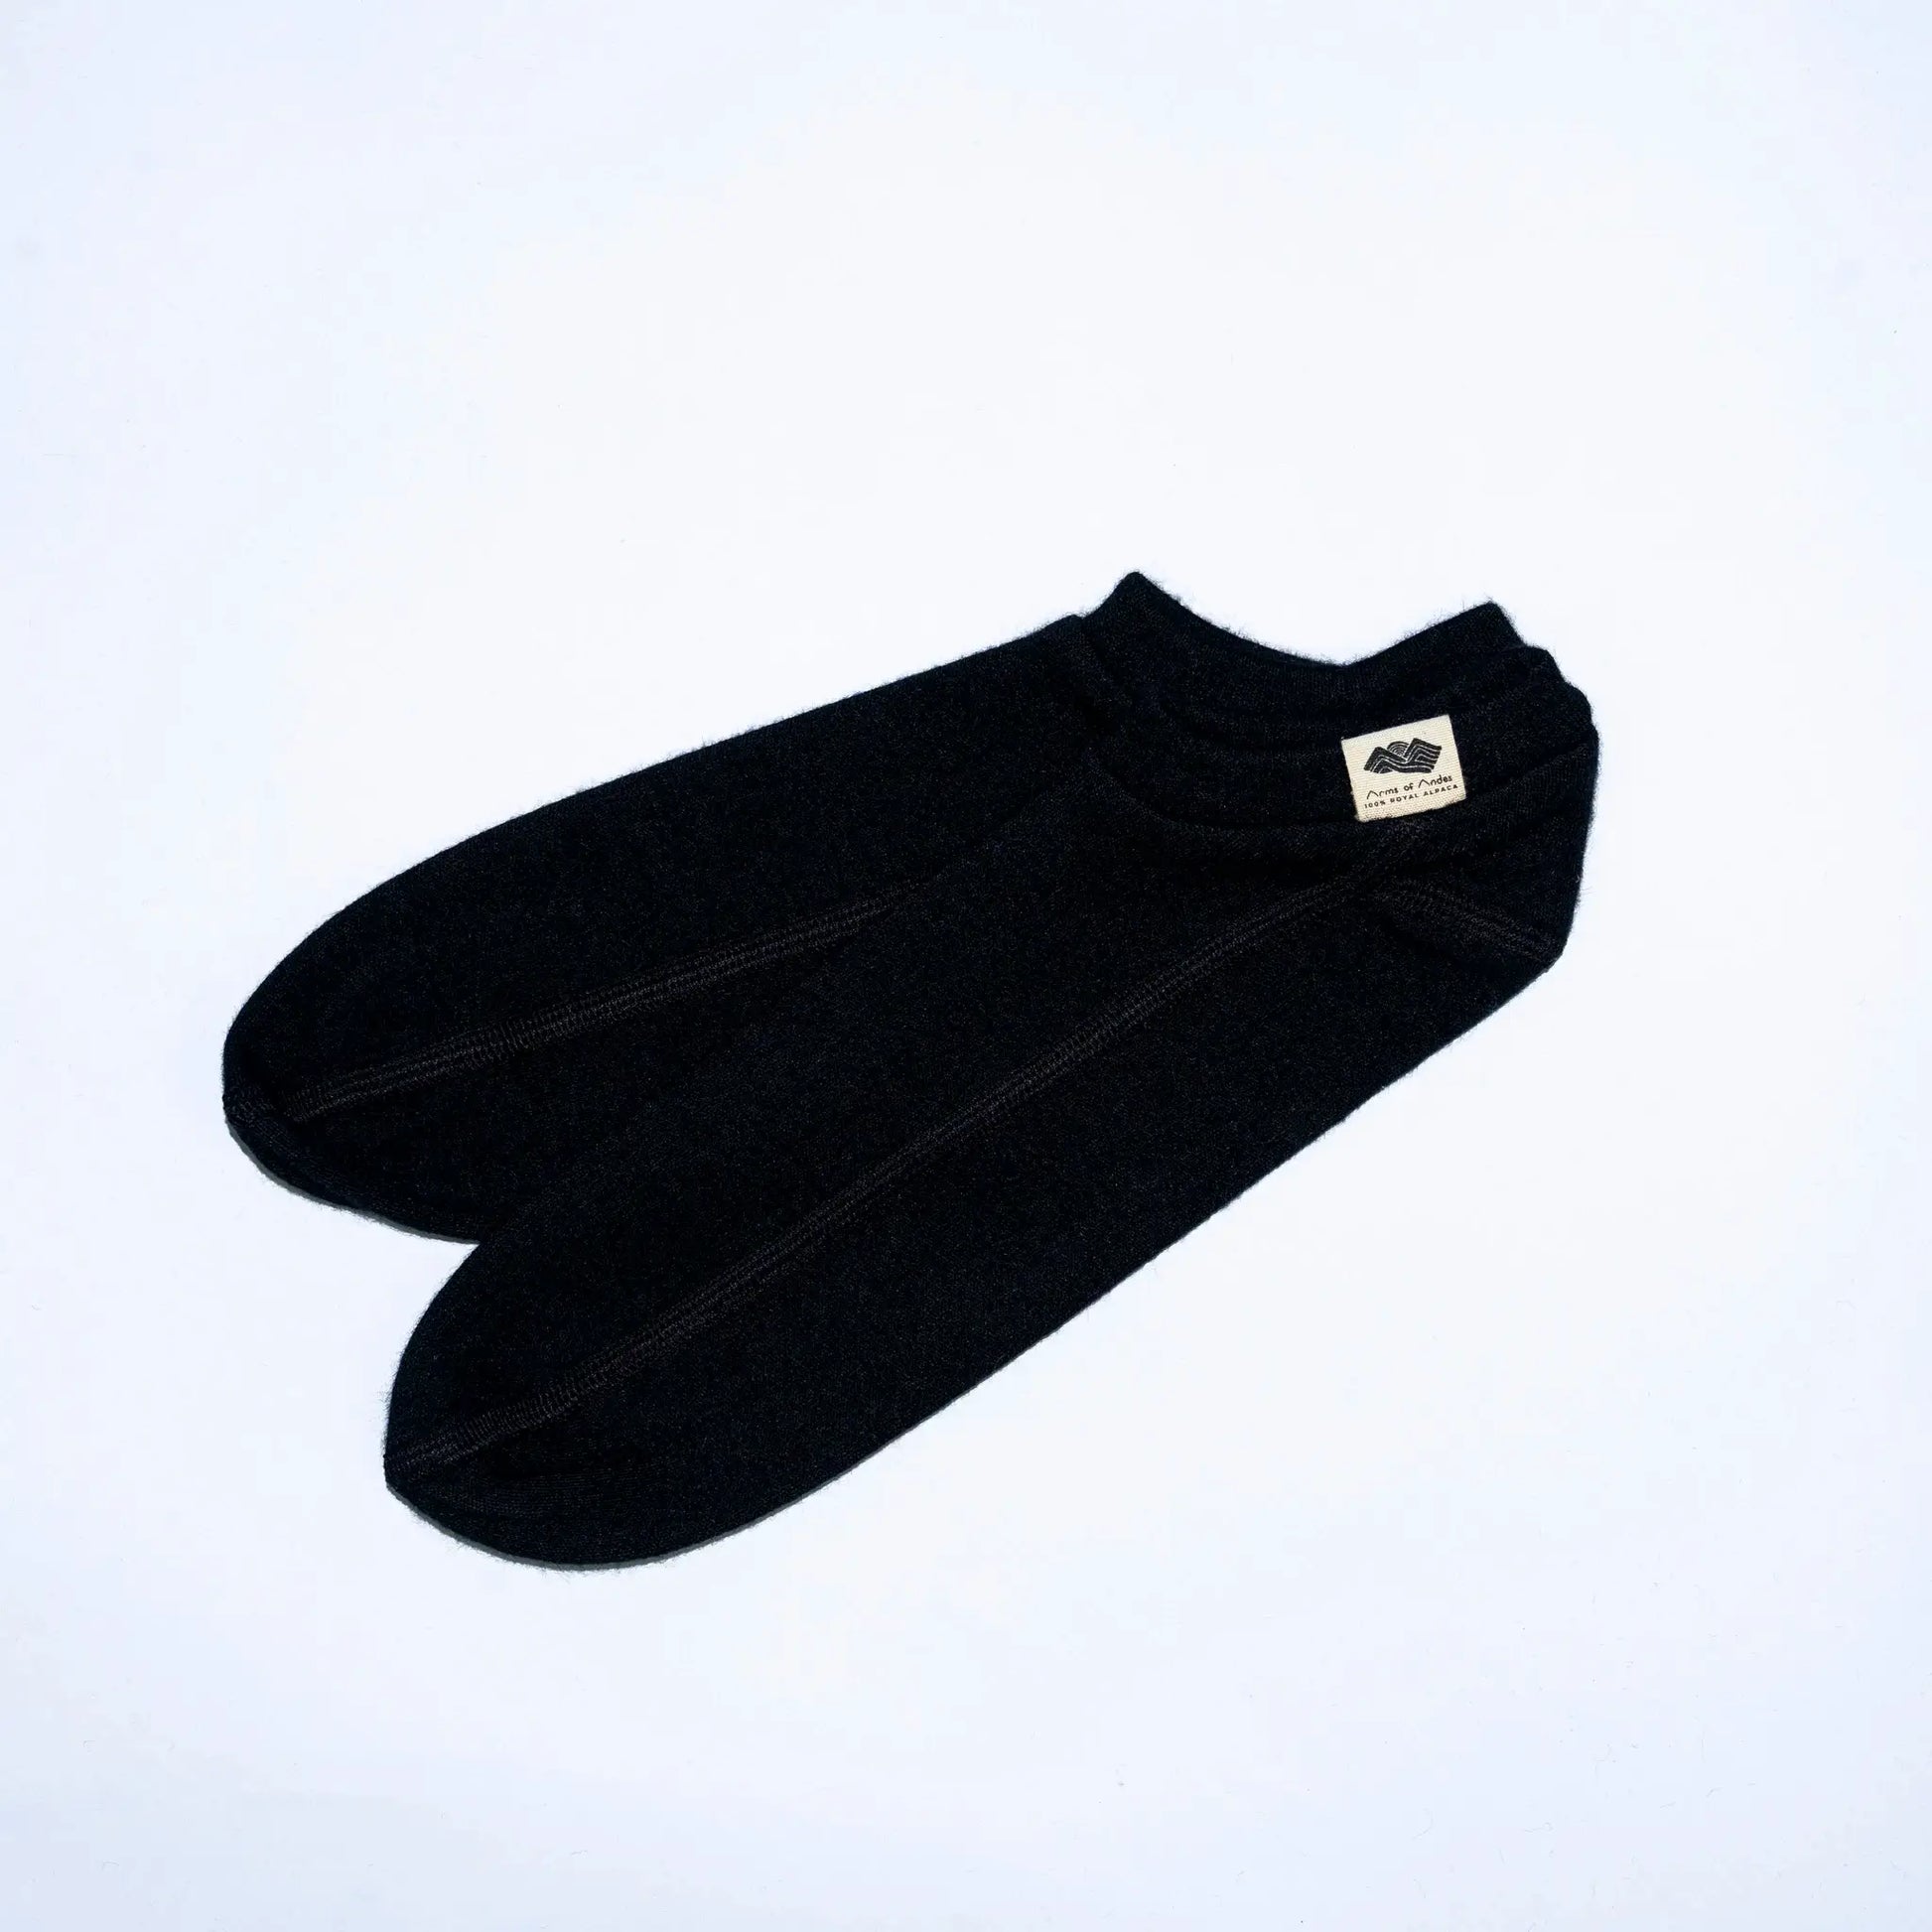 unisex slipper socks fast drying color navy blue